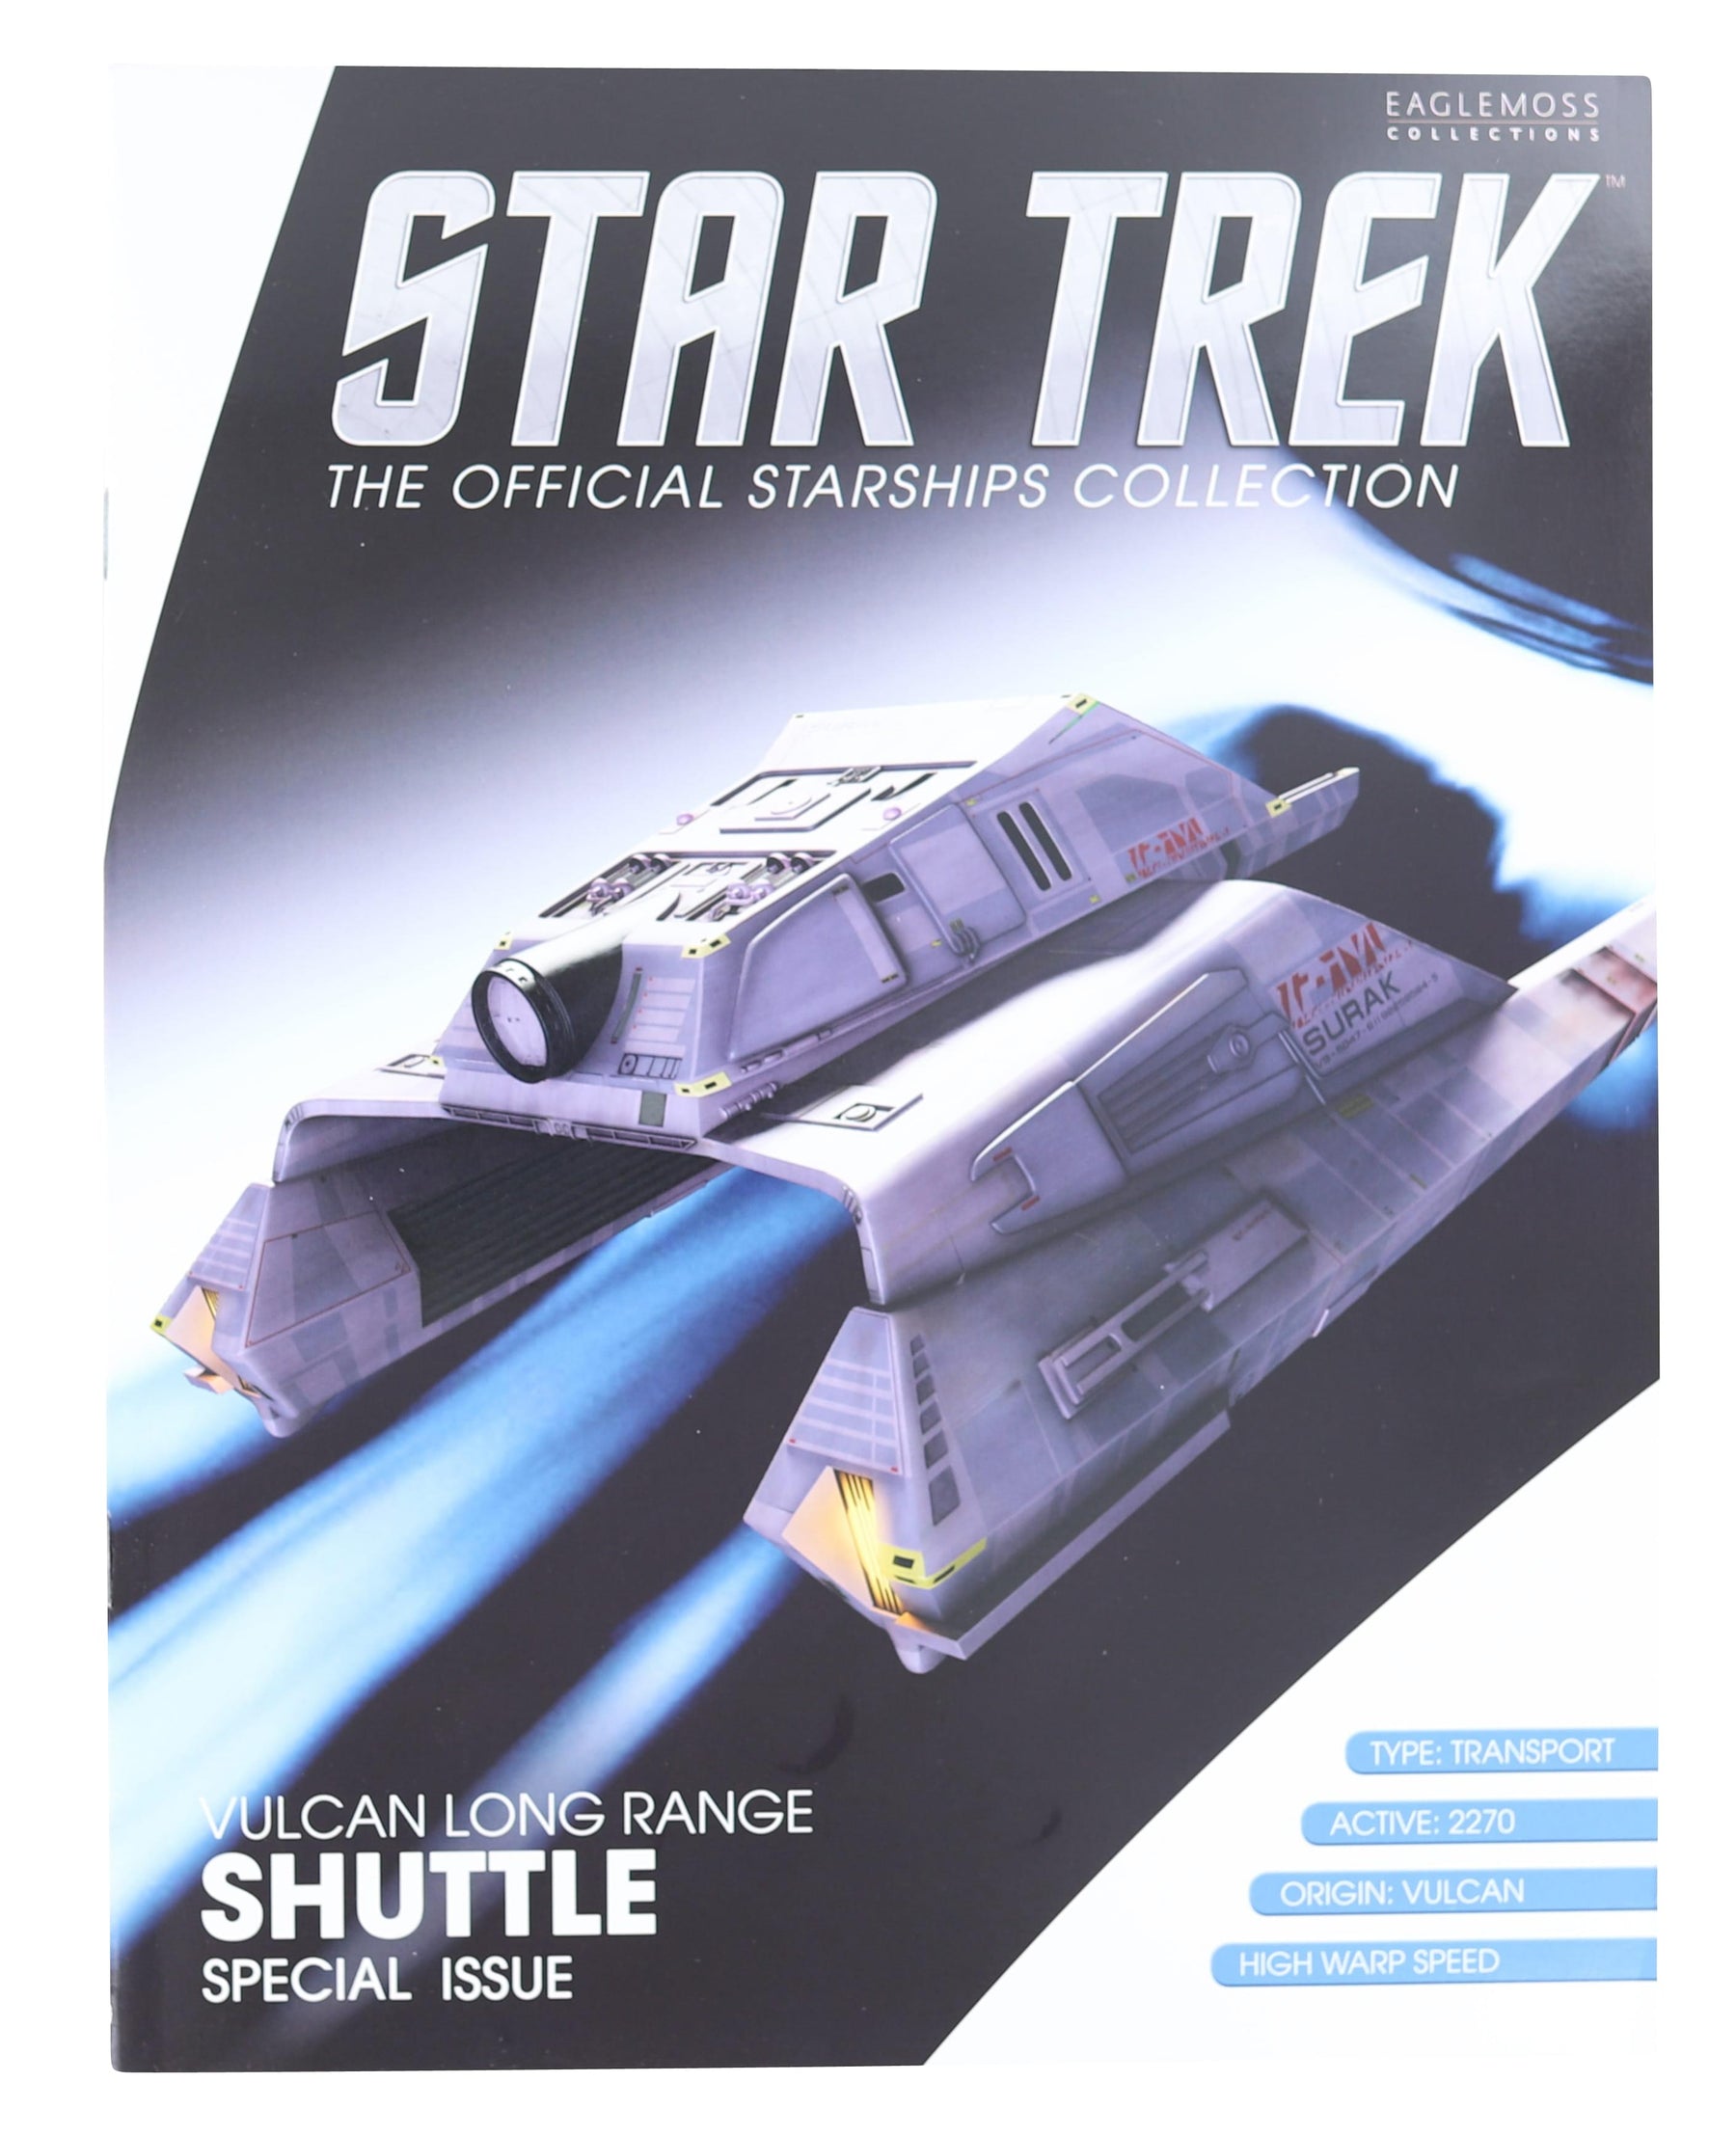 Star Trek Starships Long Range Vulcan Shuttle Magazine